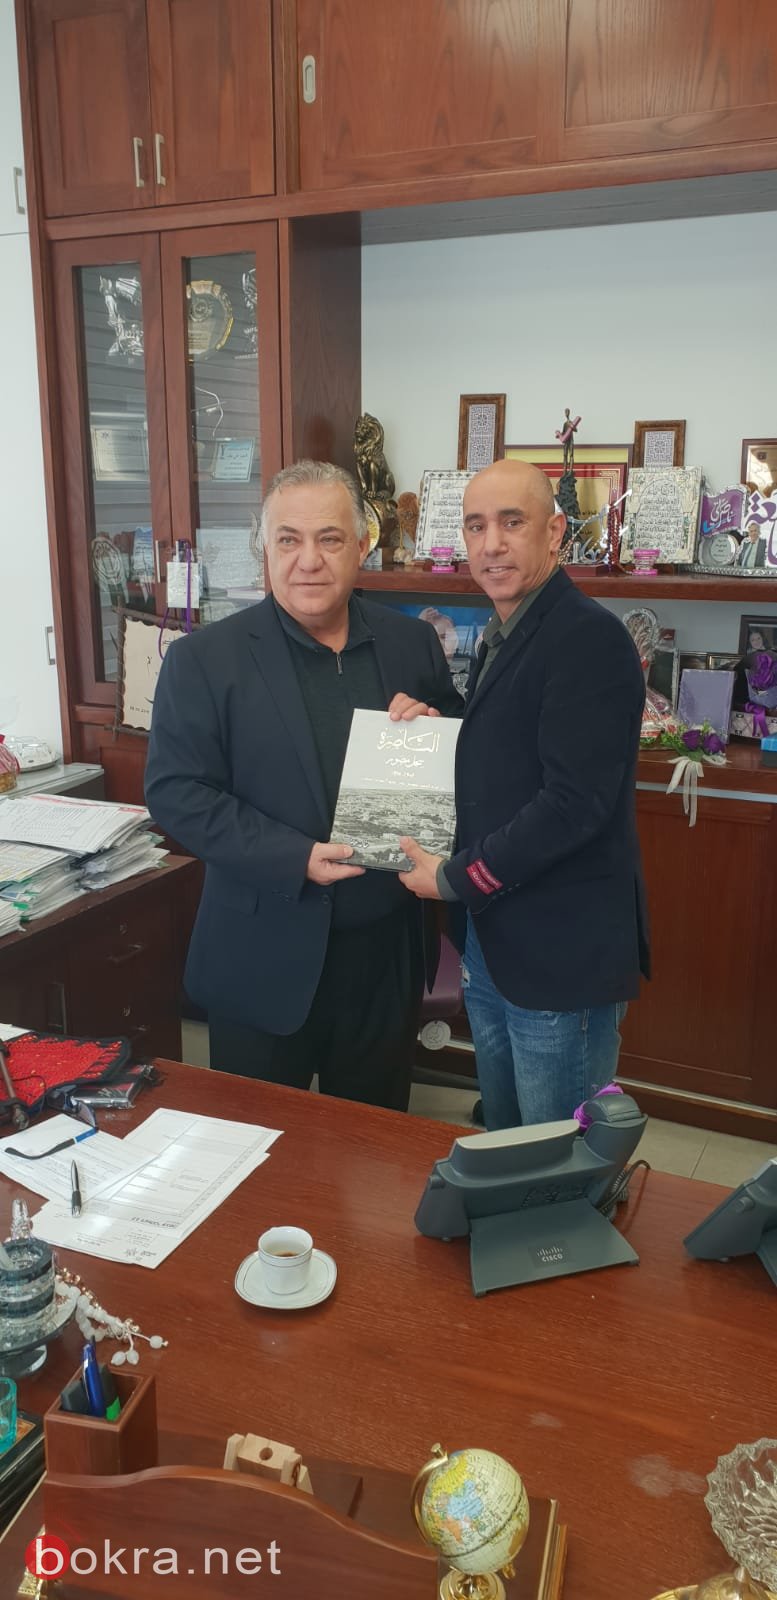 جوهر أبو لاشين بطل العالم في الملاكمة يزور بلدية الناصرة-3